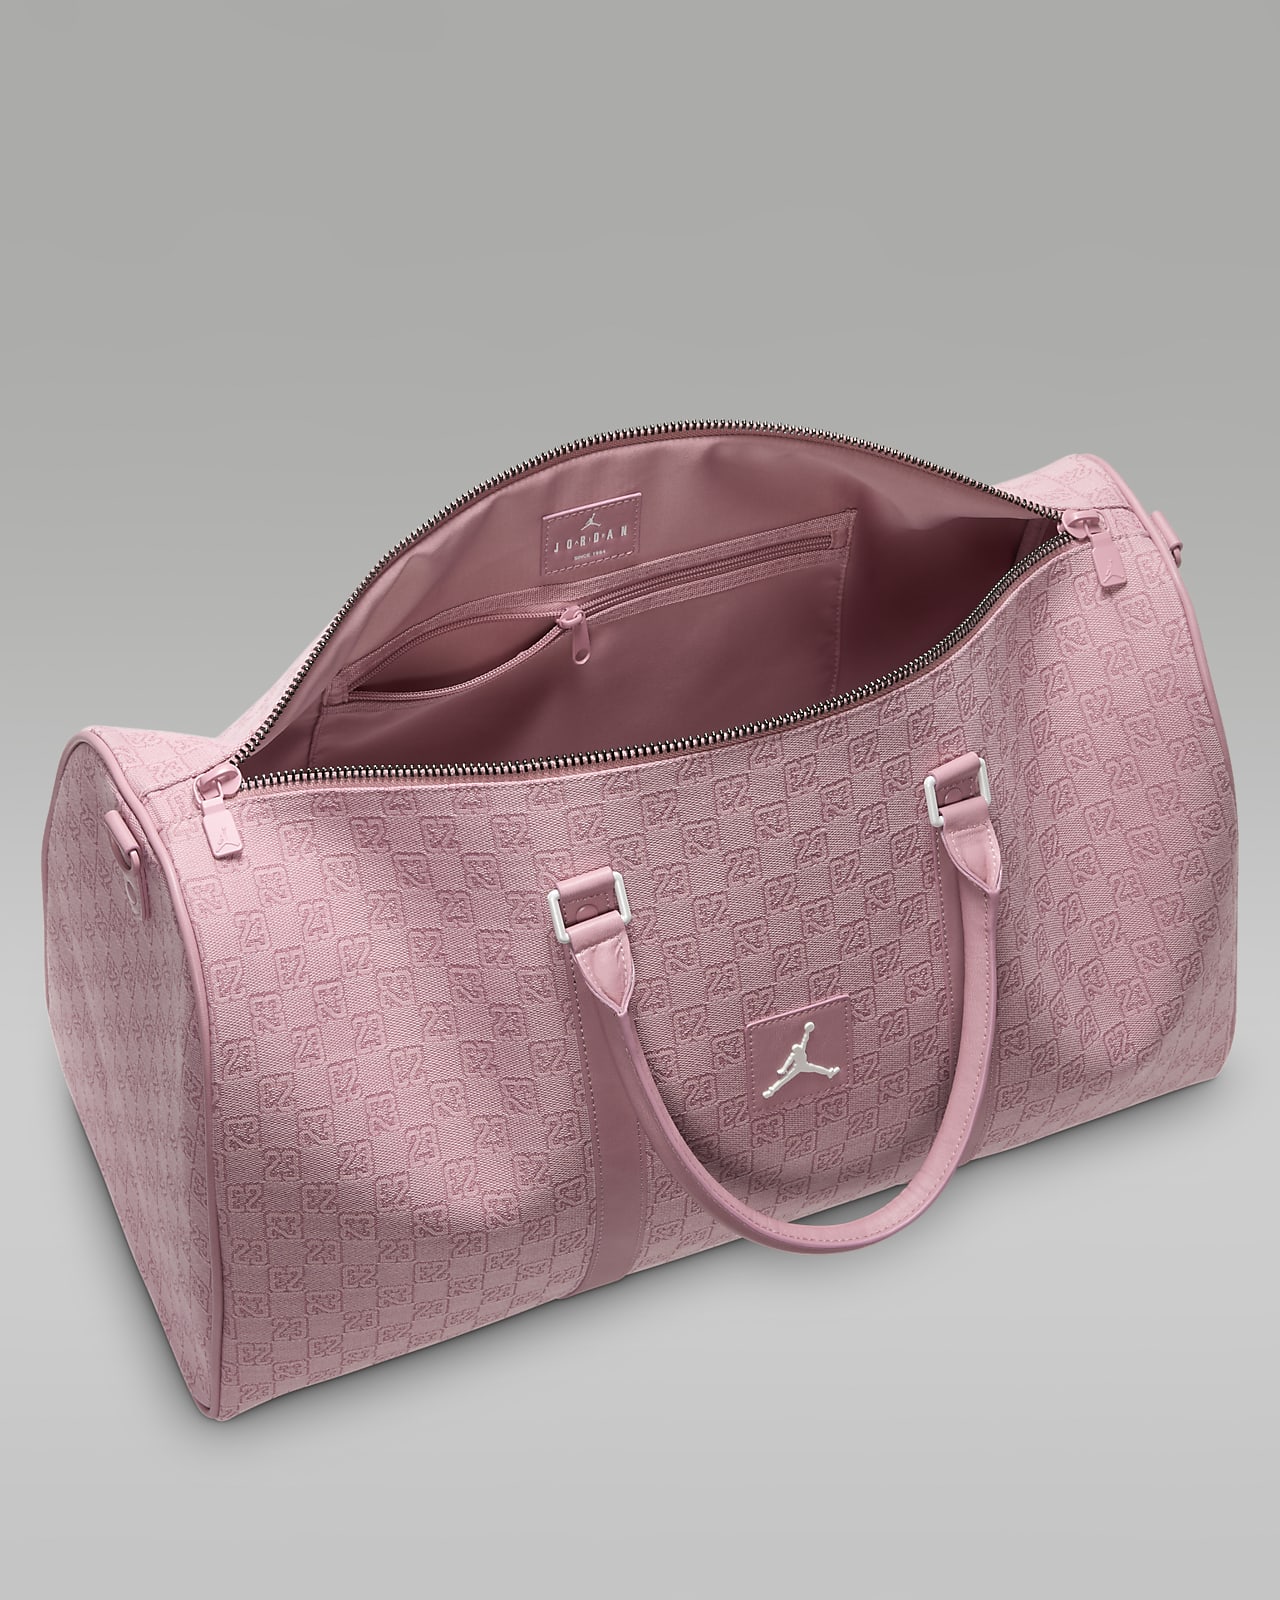 Jordan Monogram Duffle Bag (40L)